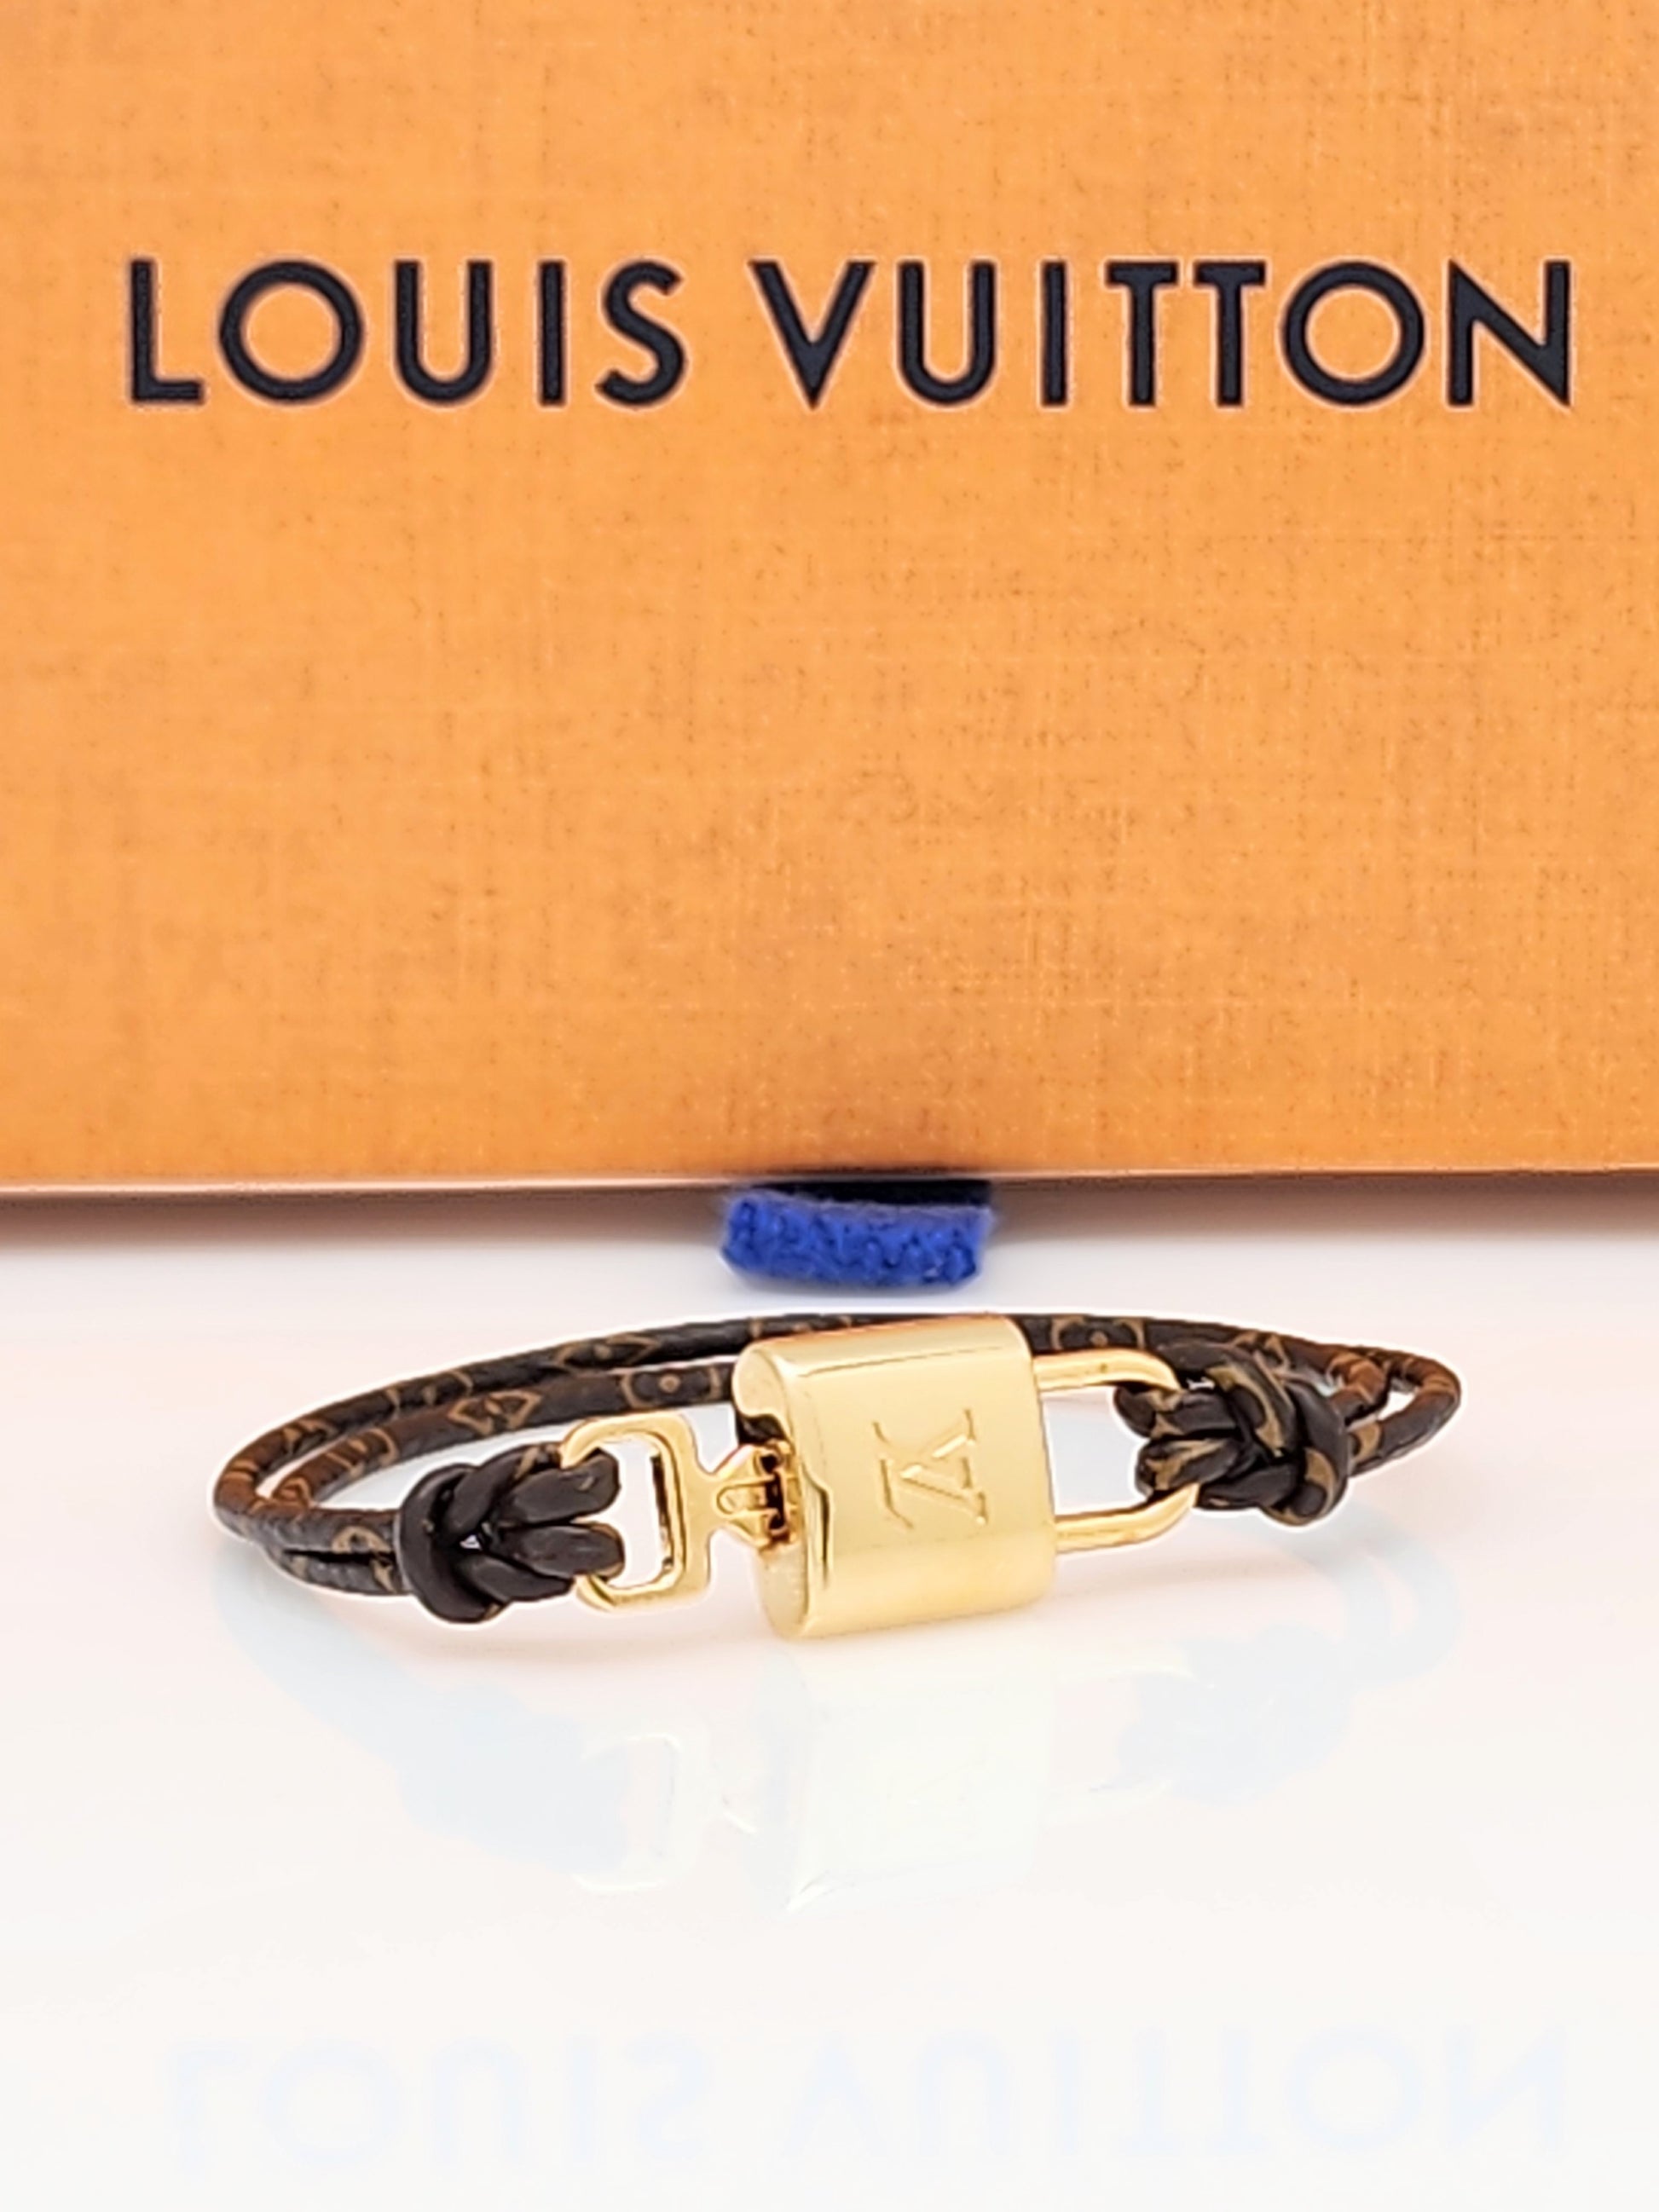 LOUIS VUITTON Padlock Monogram Canvas Bracelet Size 17